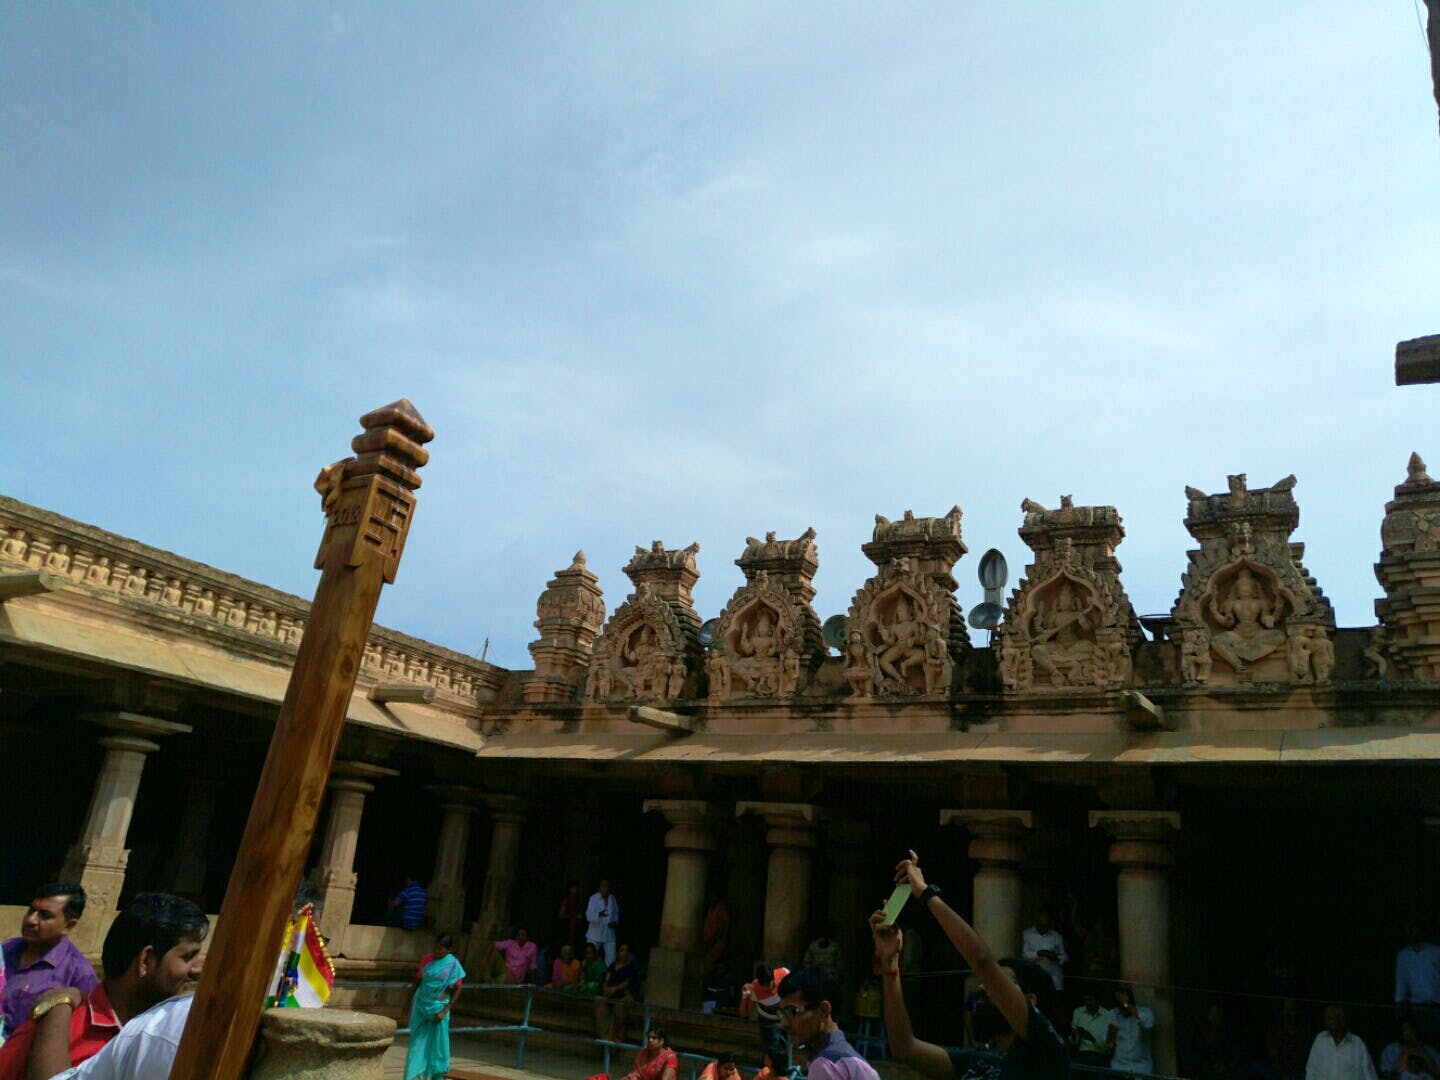 Sky,Hindu temple,Tourism,Building,Historic site,Temple,Architecture,Temple,Cloud,Ancient history